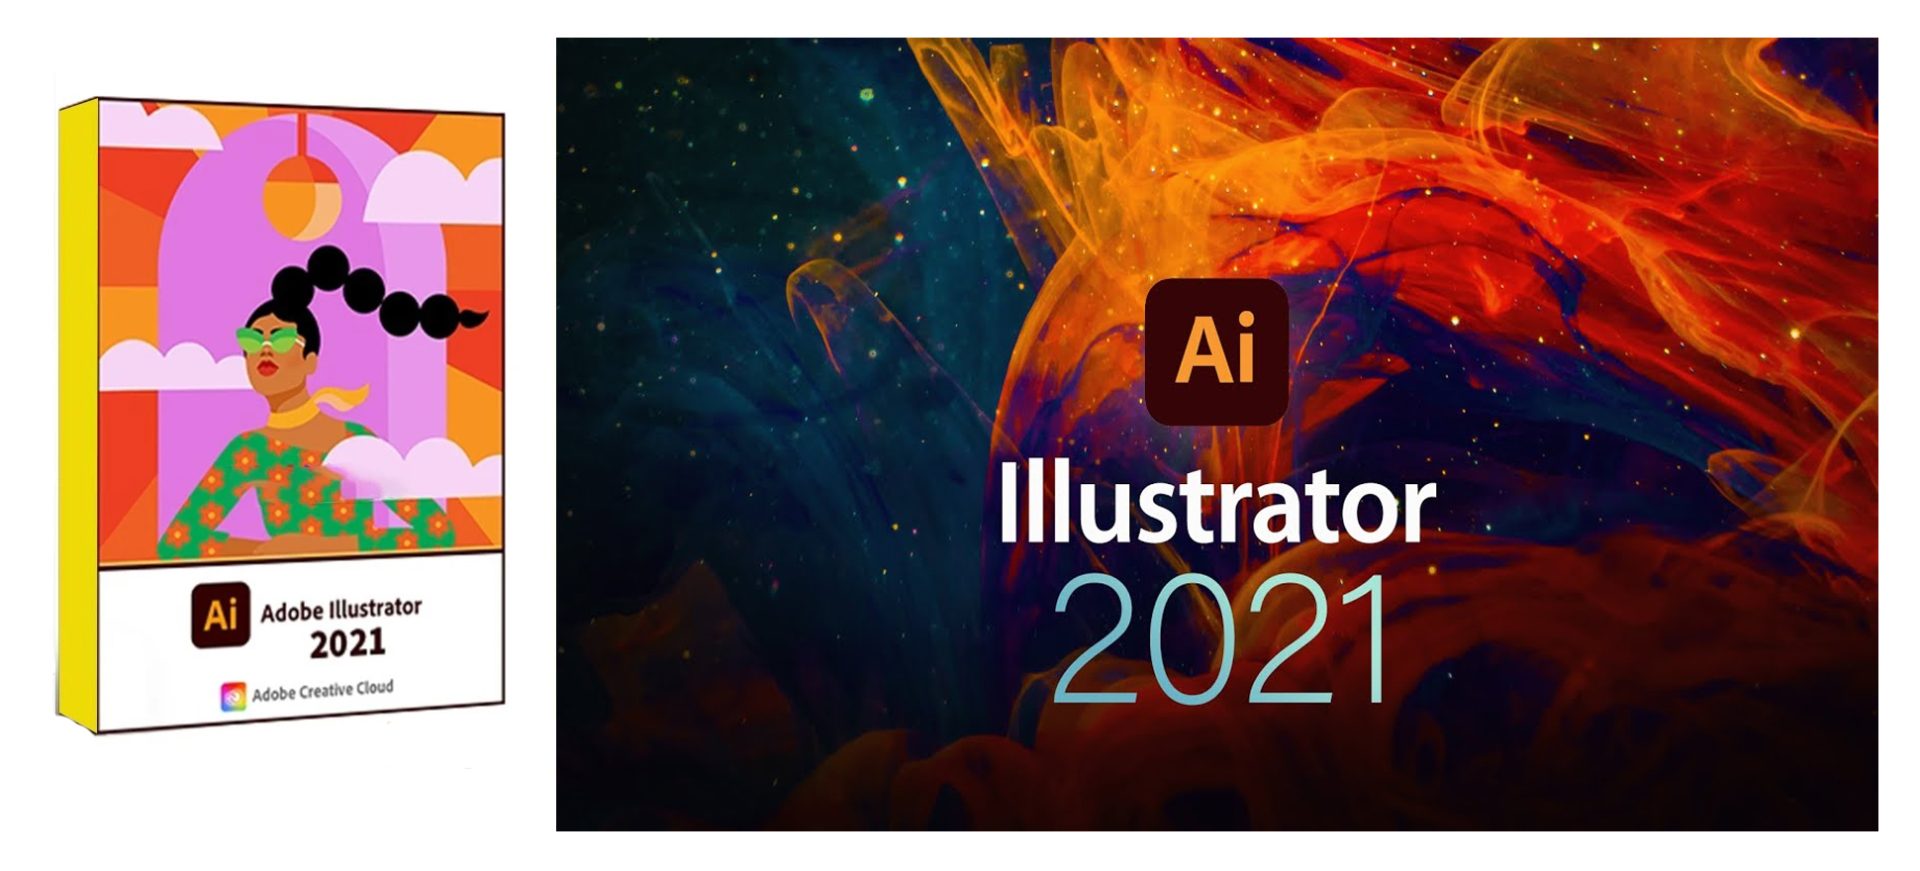 Tải Phần Mềm Adobe Illustrator CC 2021 Full Crack - Hướng Dẫn Cài Đặt Chi Tiết - Phanmemantoan.net - Tải An Toàn